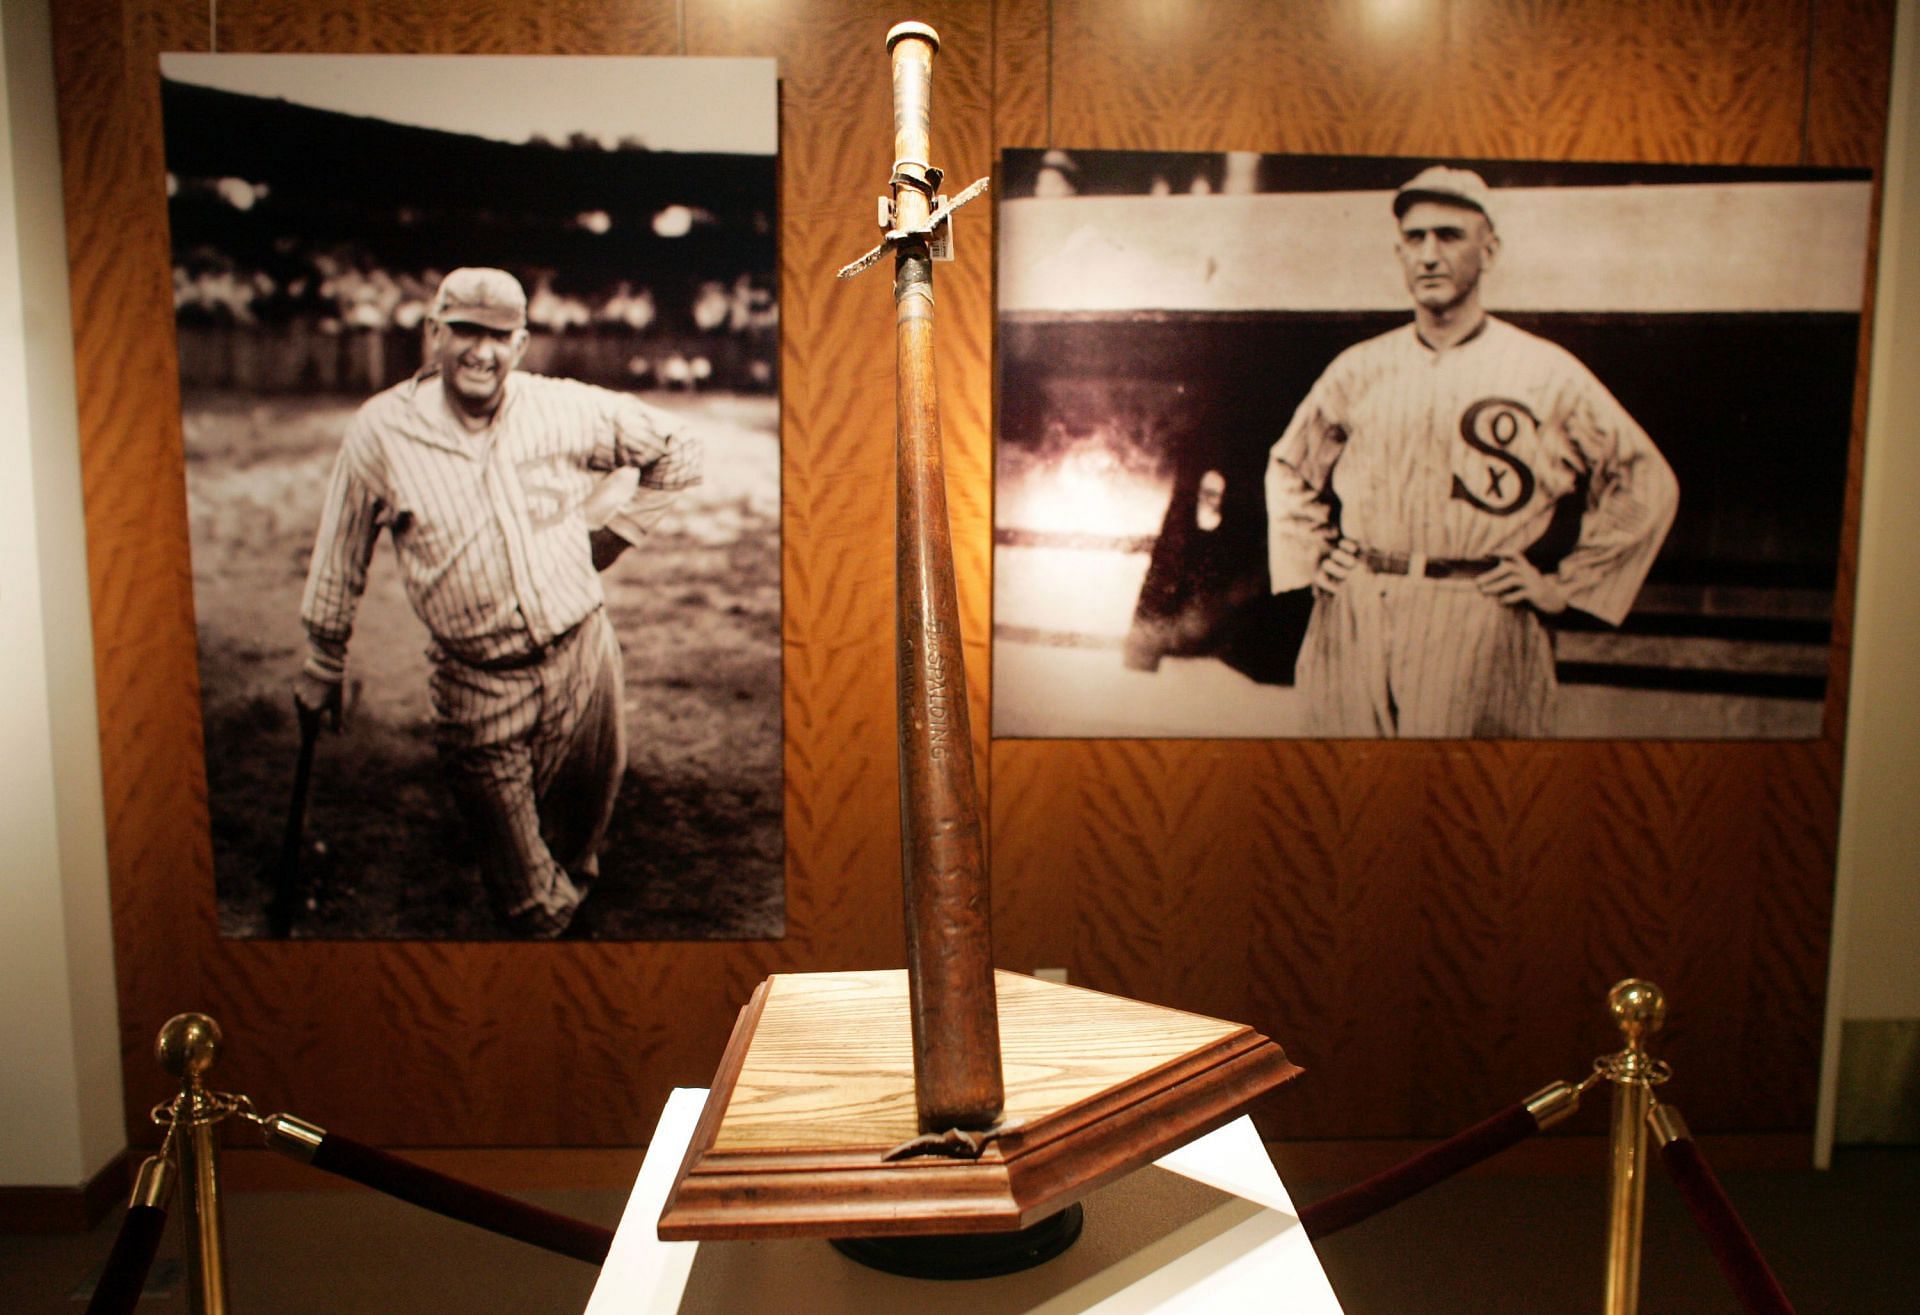 Banned by MLB, 'Shoeless Joe' Jackson has Hall of Fame-like shrine where he  died